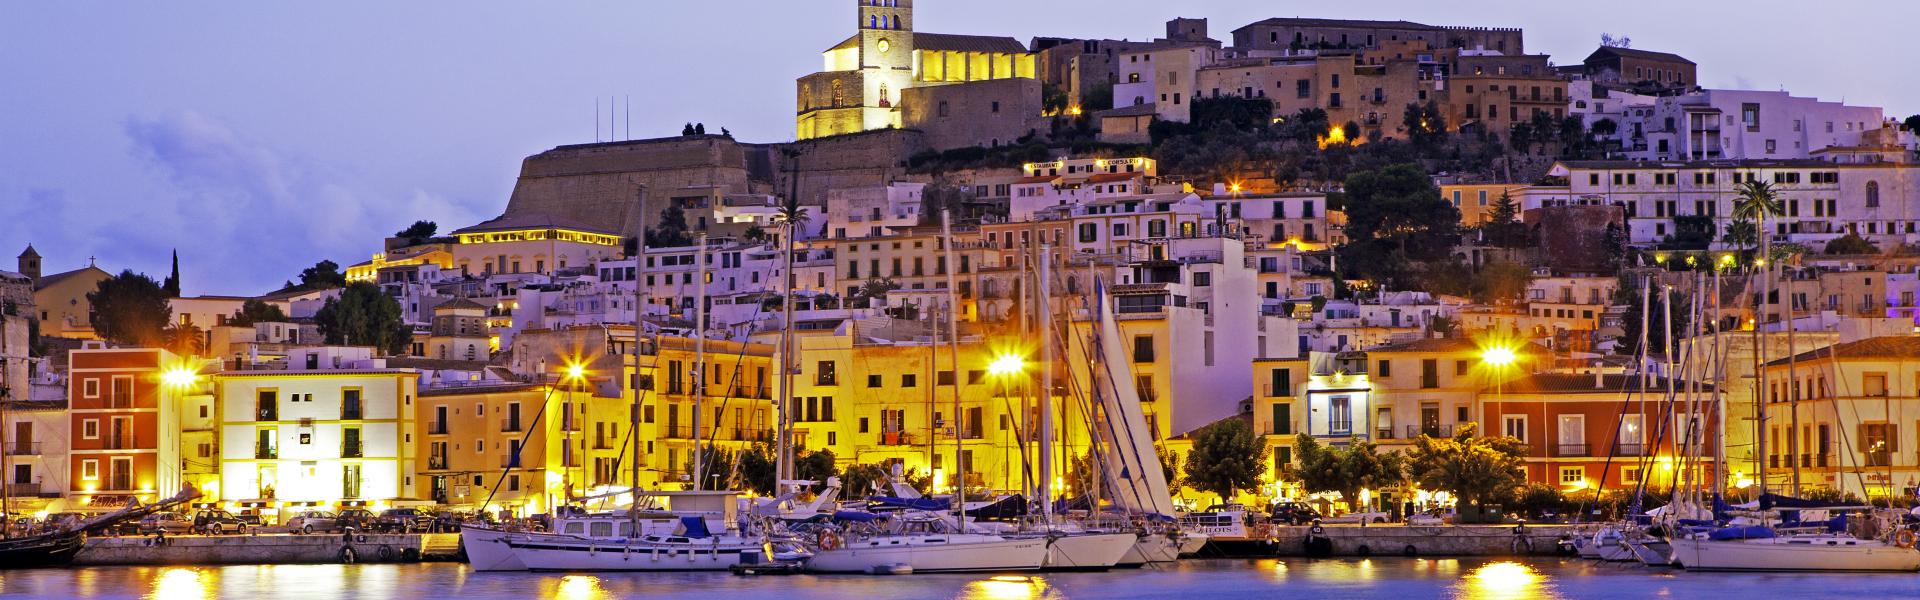 Ibiza Scenic View